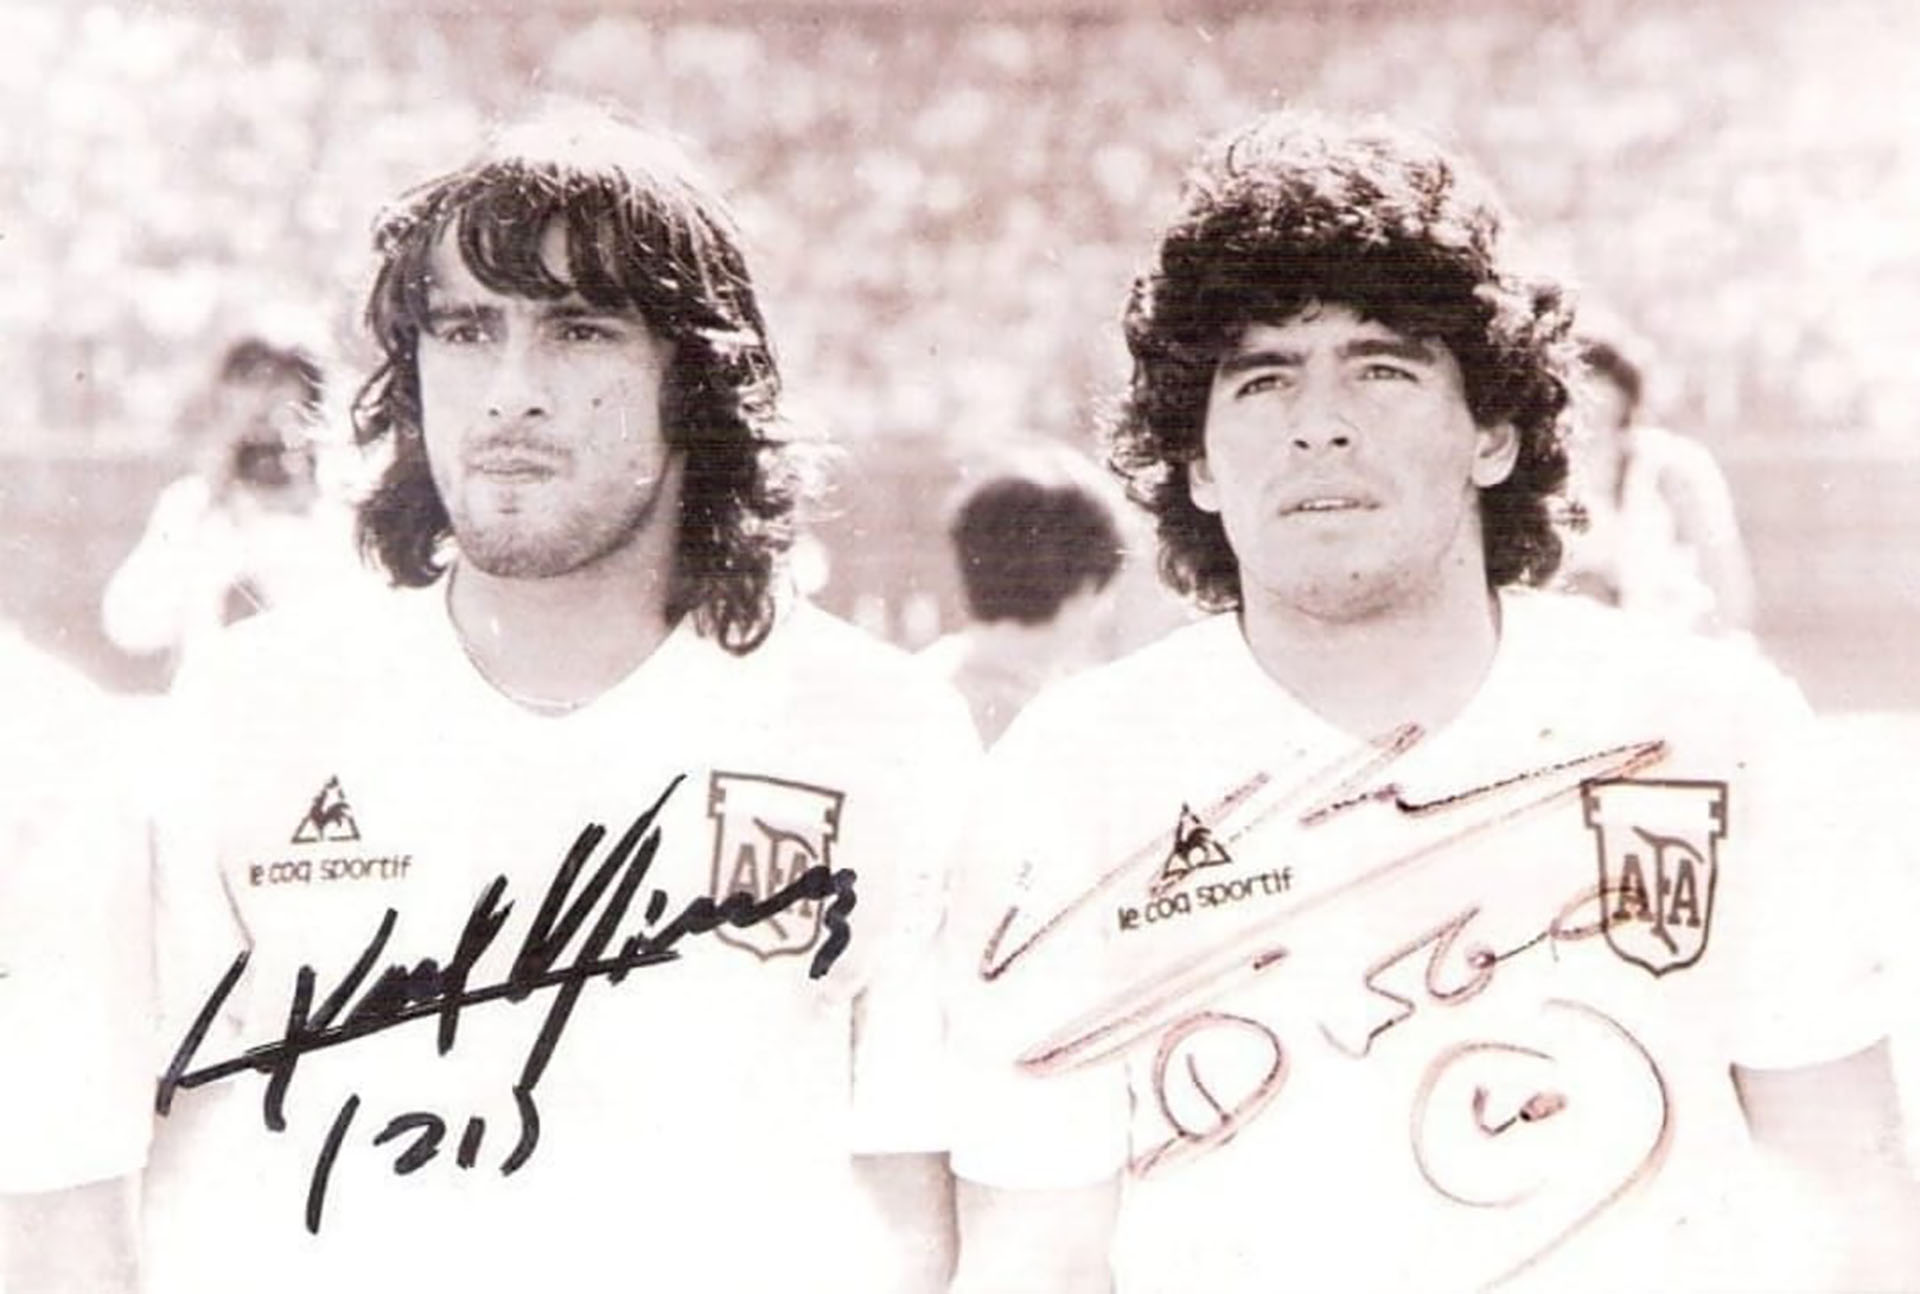 Valencia y Diego compartieron sus días en la Selección en los procesos de los Mundiales 78 y 82. Maradona fue cortado para el primero, pero disputó el segundo